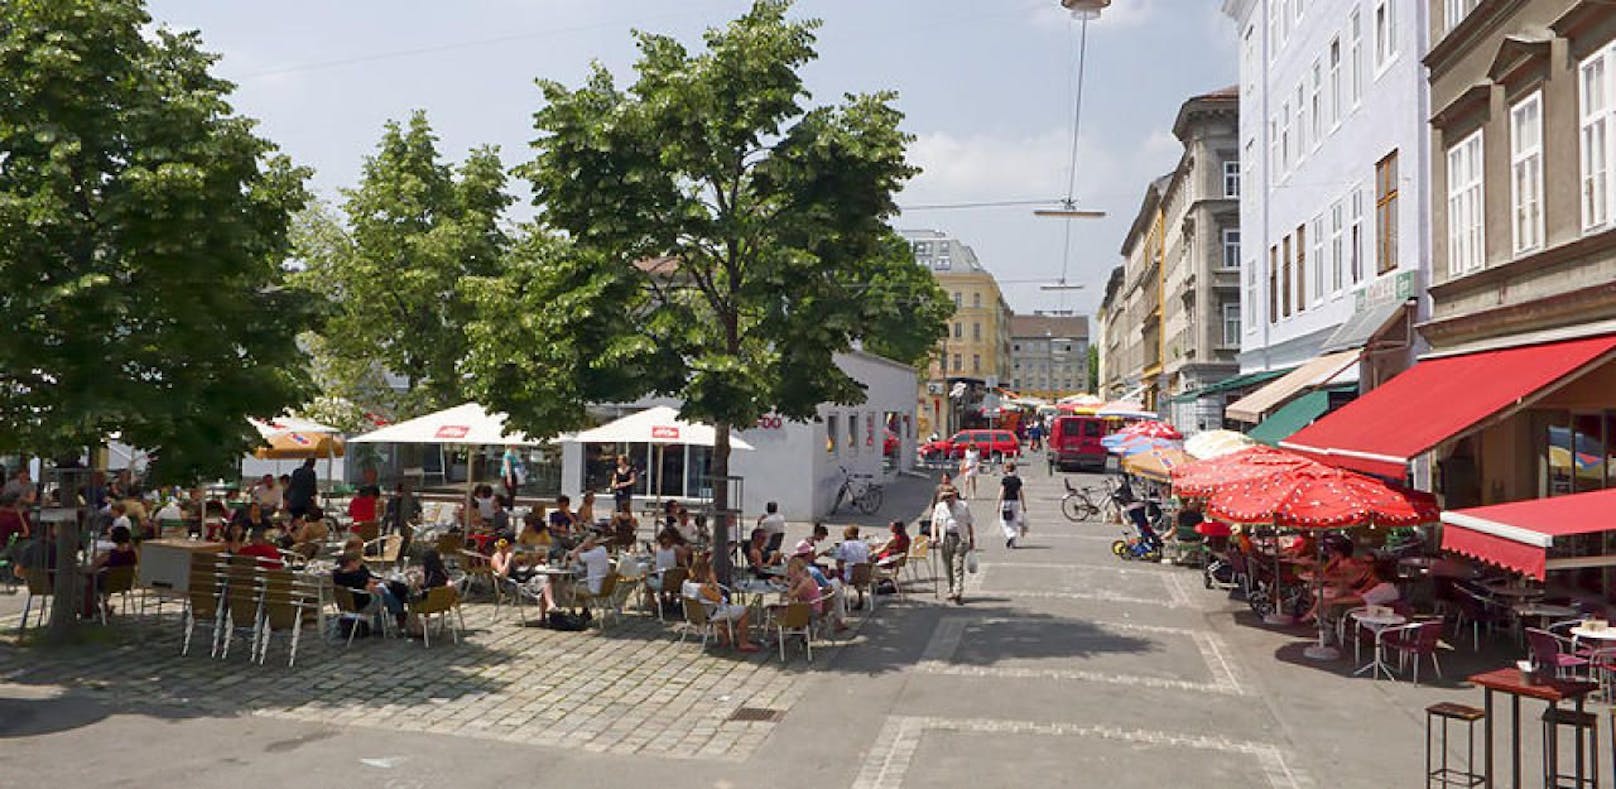 Das Yppenviertel ist ein Grätzl im 16. Wiener Gemeindebezirk Ottakring.